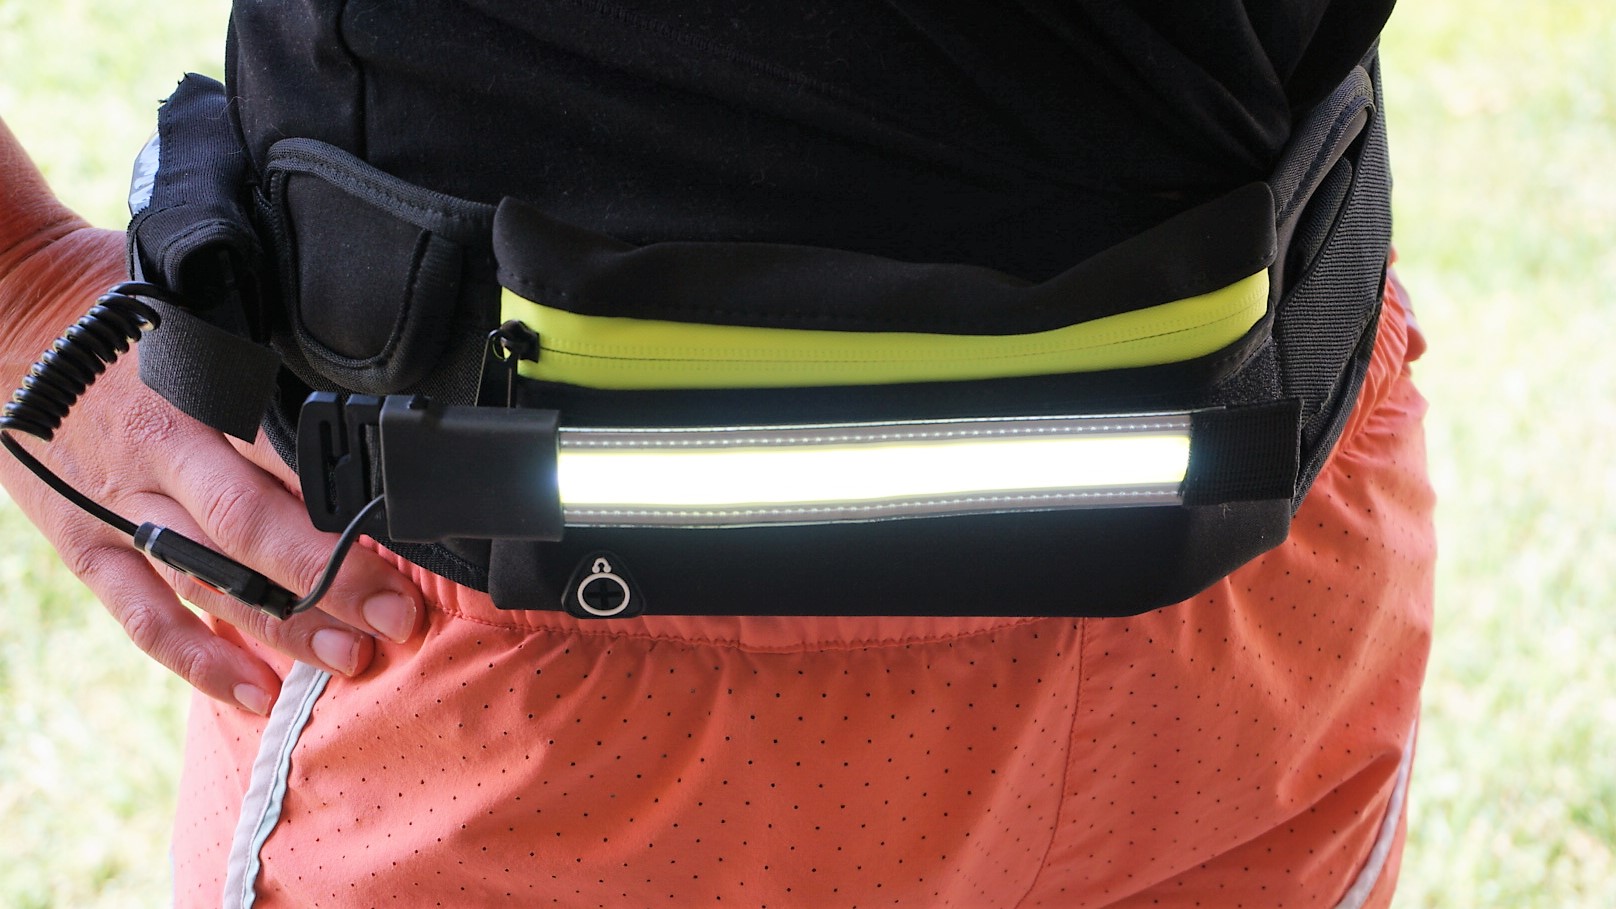 a photo of a running belt that has a light